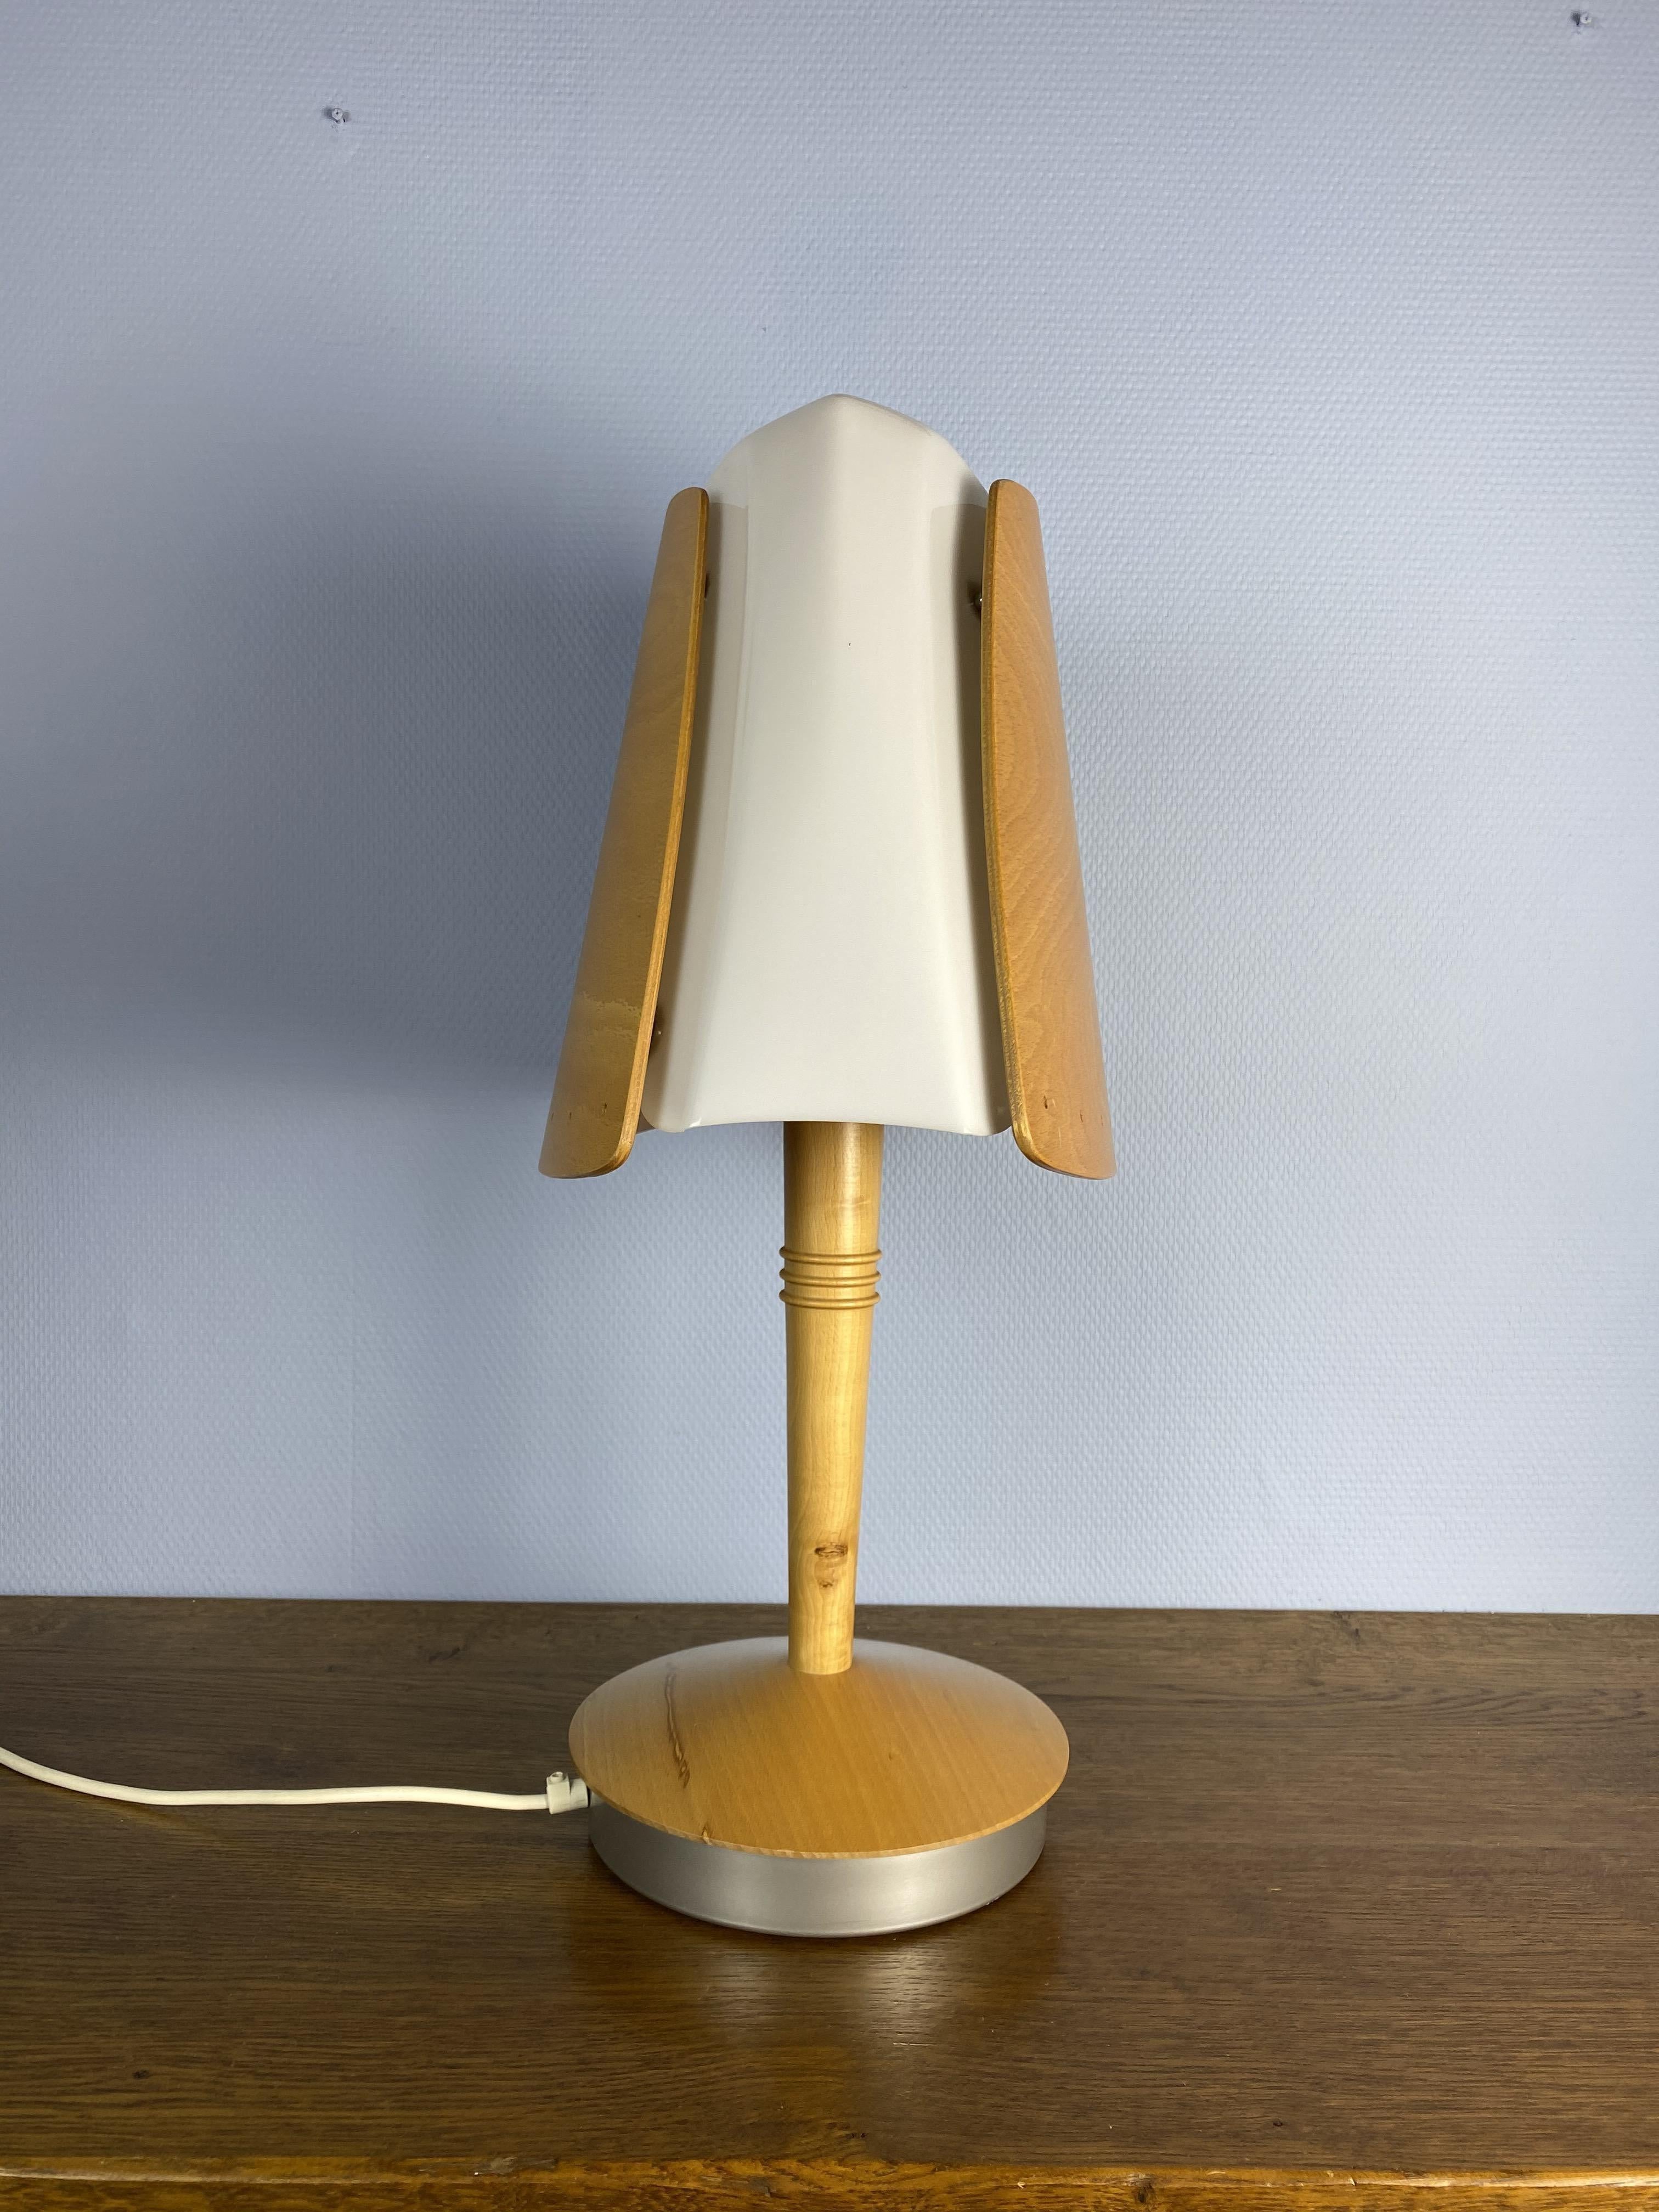 Lampe de table de style scandinave par Lucid, France pour la commande spéciale exclusive de l'hôtel Hilton à Barcelone. L'abat-jour est fabriqué en méthacrylate et en bois.